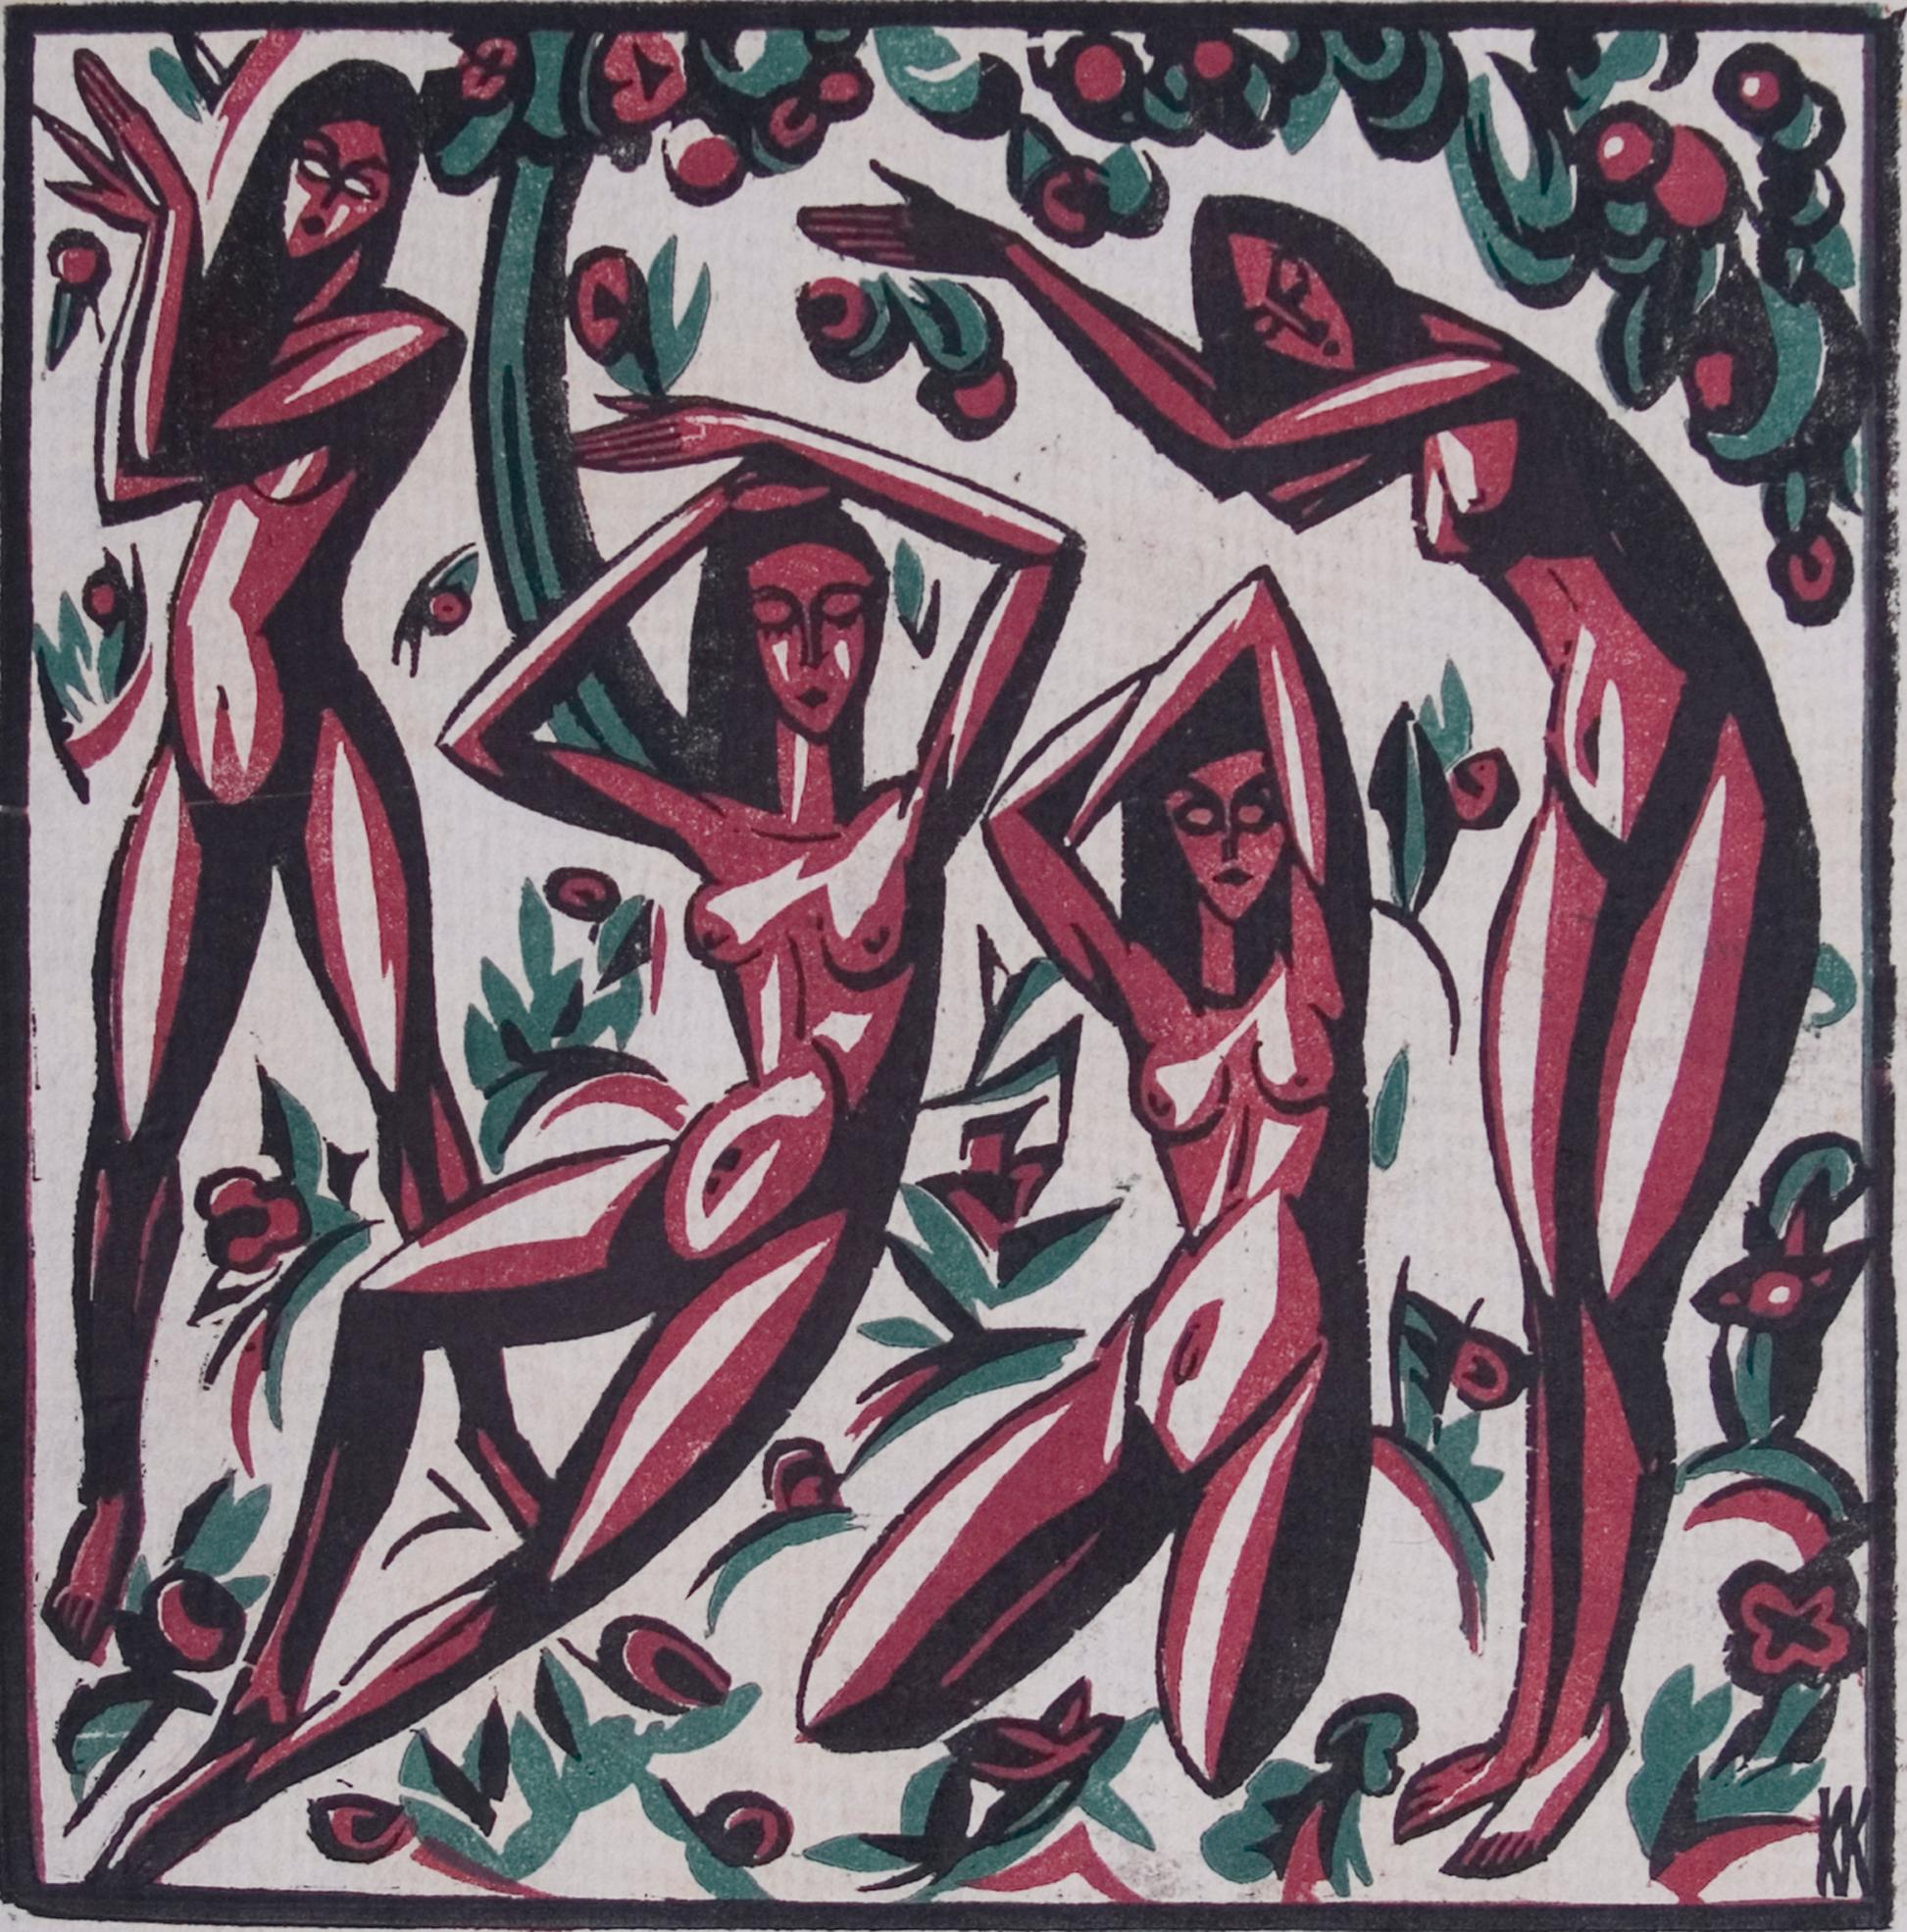 Karl Kriete Nude Print - Freude (Joy) - Woodcut Print in Colors, Nudes, Modern, Red/Green, 20th Century